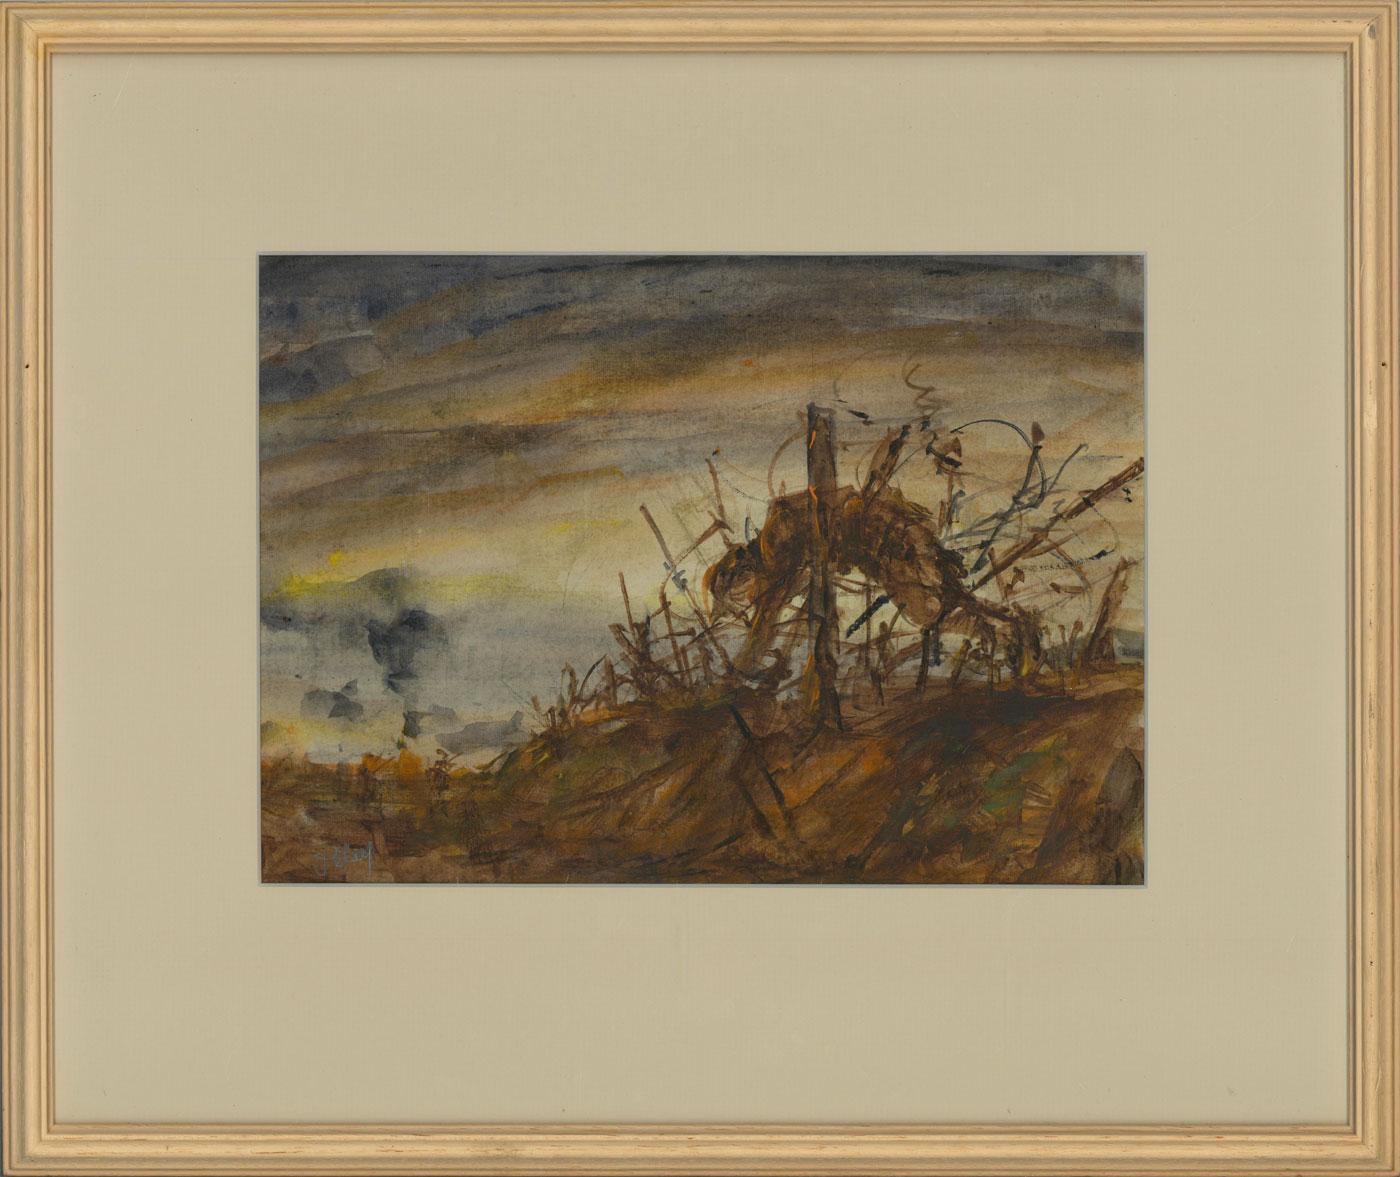 Une composition de champ de bataille dévastatrice et saisissante de l'artiste britannique classé Ronald Olley (né en 1926). Une clôture de barbelés marque une frontière sur un territoire contesté, avec le cadavre suspendu d'un soldat comme point